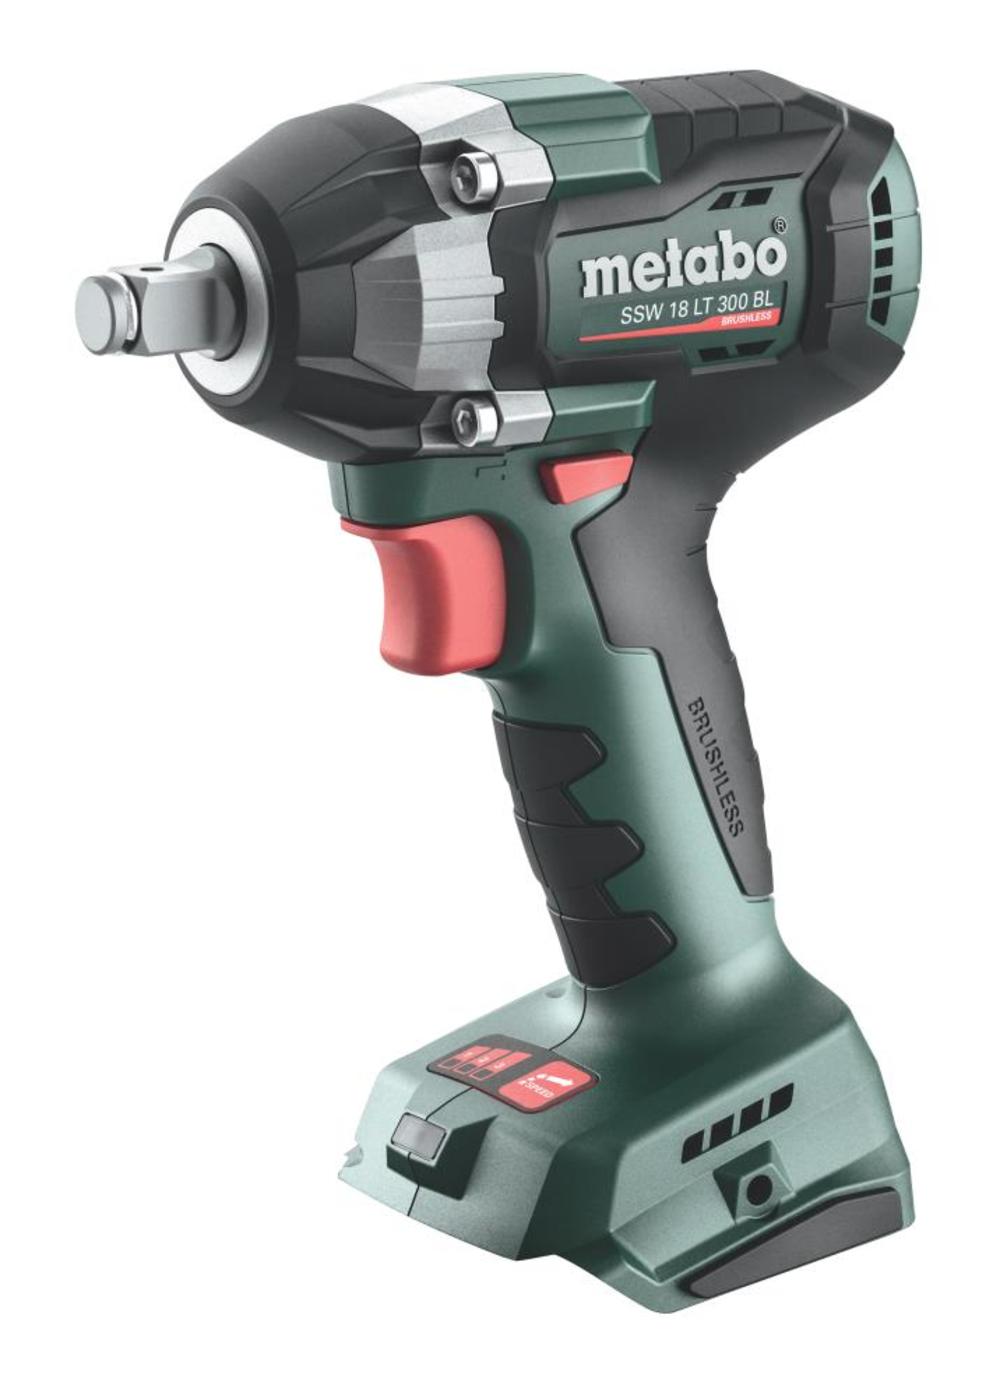 Metabo SSW 18 LT 300 BL 18V 1/2 Square Brushless Impact Wrench Bare Tool